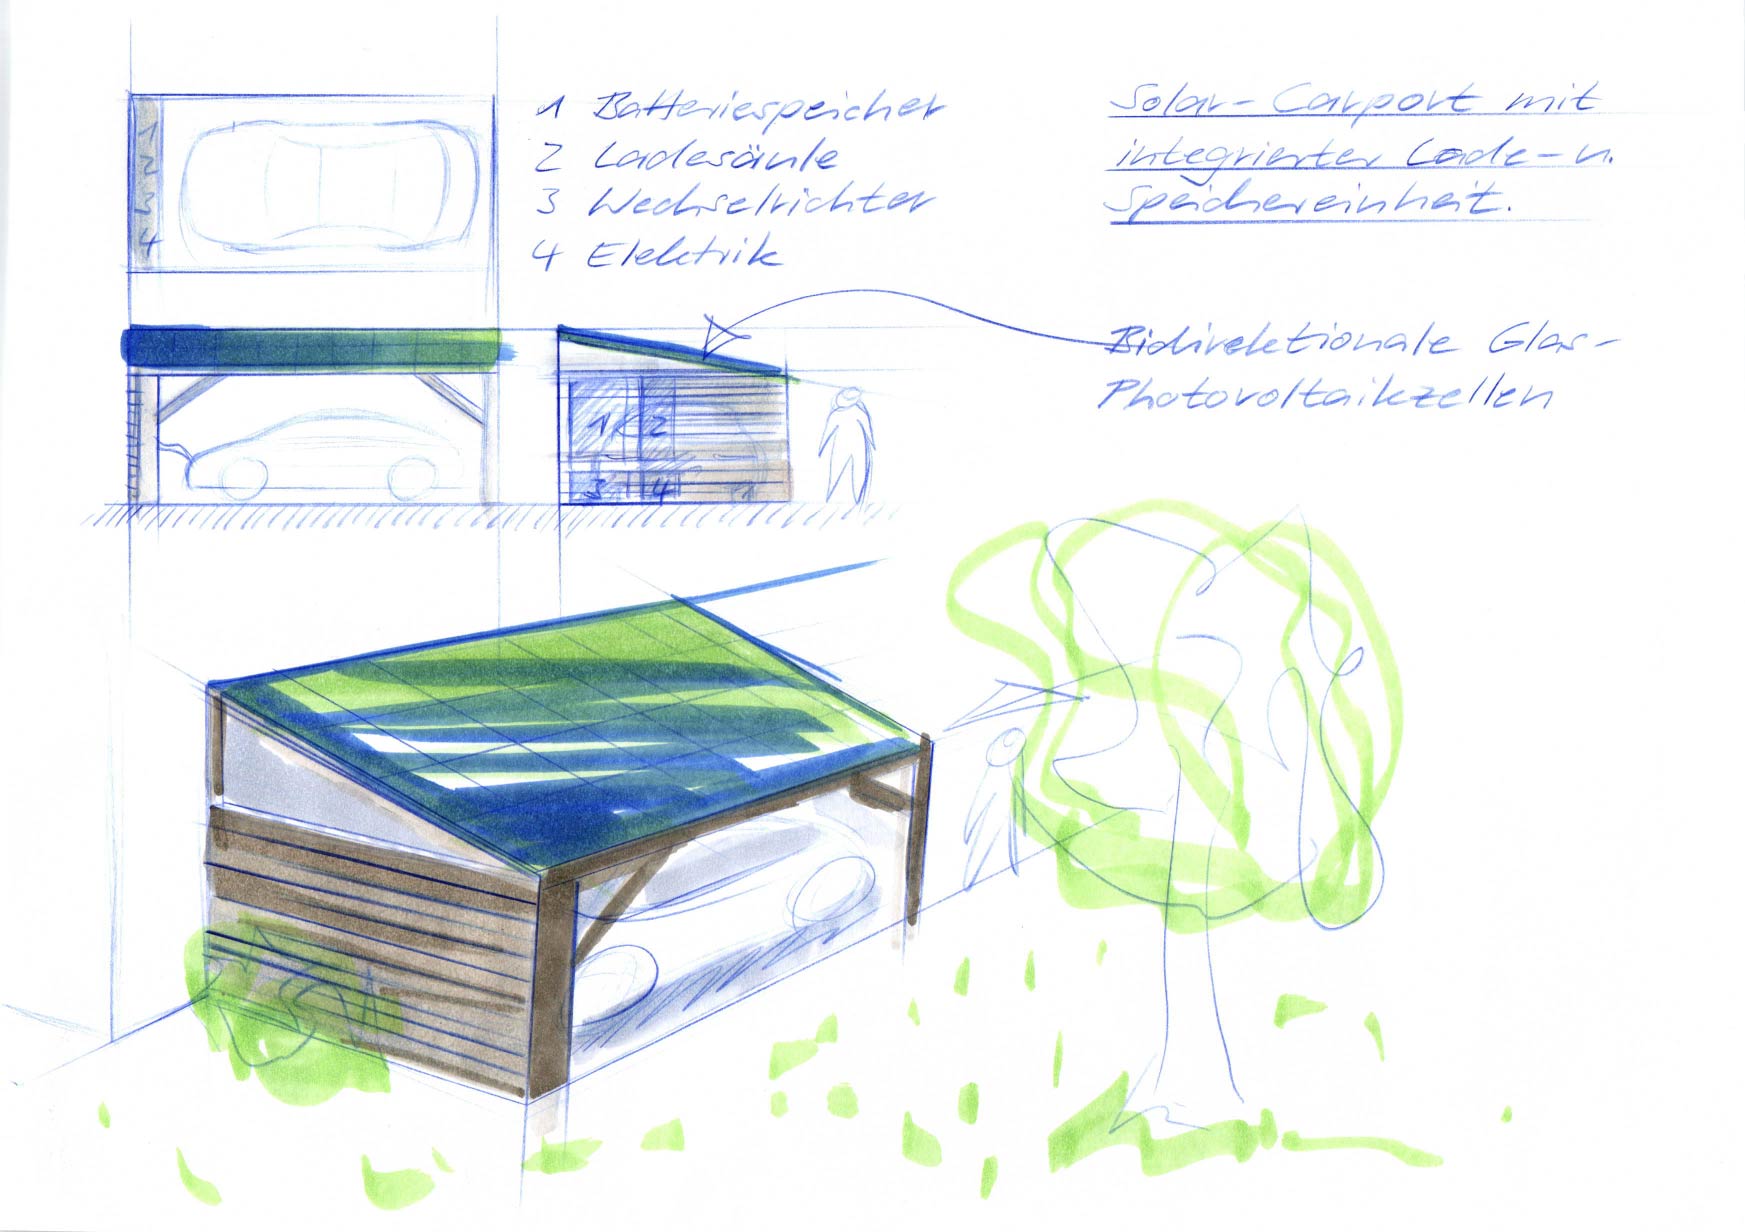 Solar-Carport Design mit Photovoltaik und Batteriespeicher System, Swiss Made